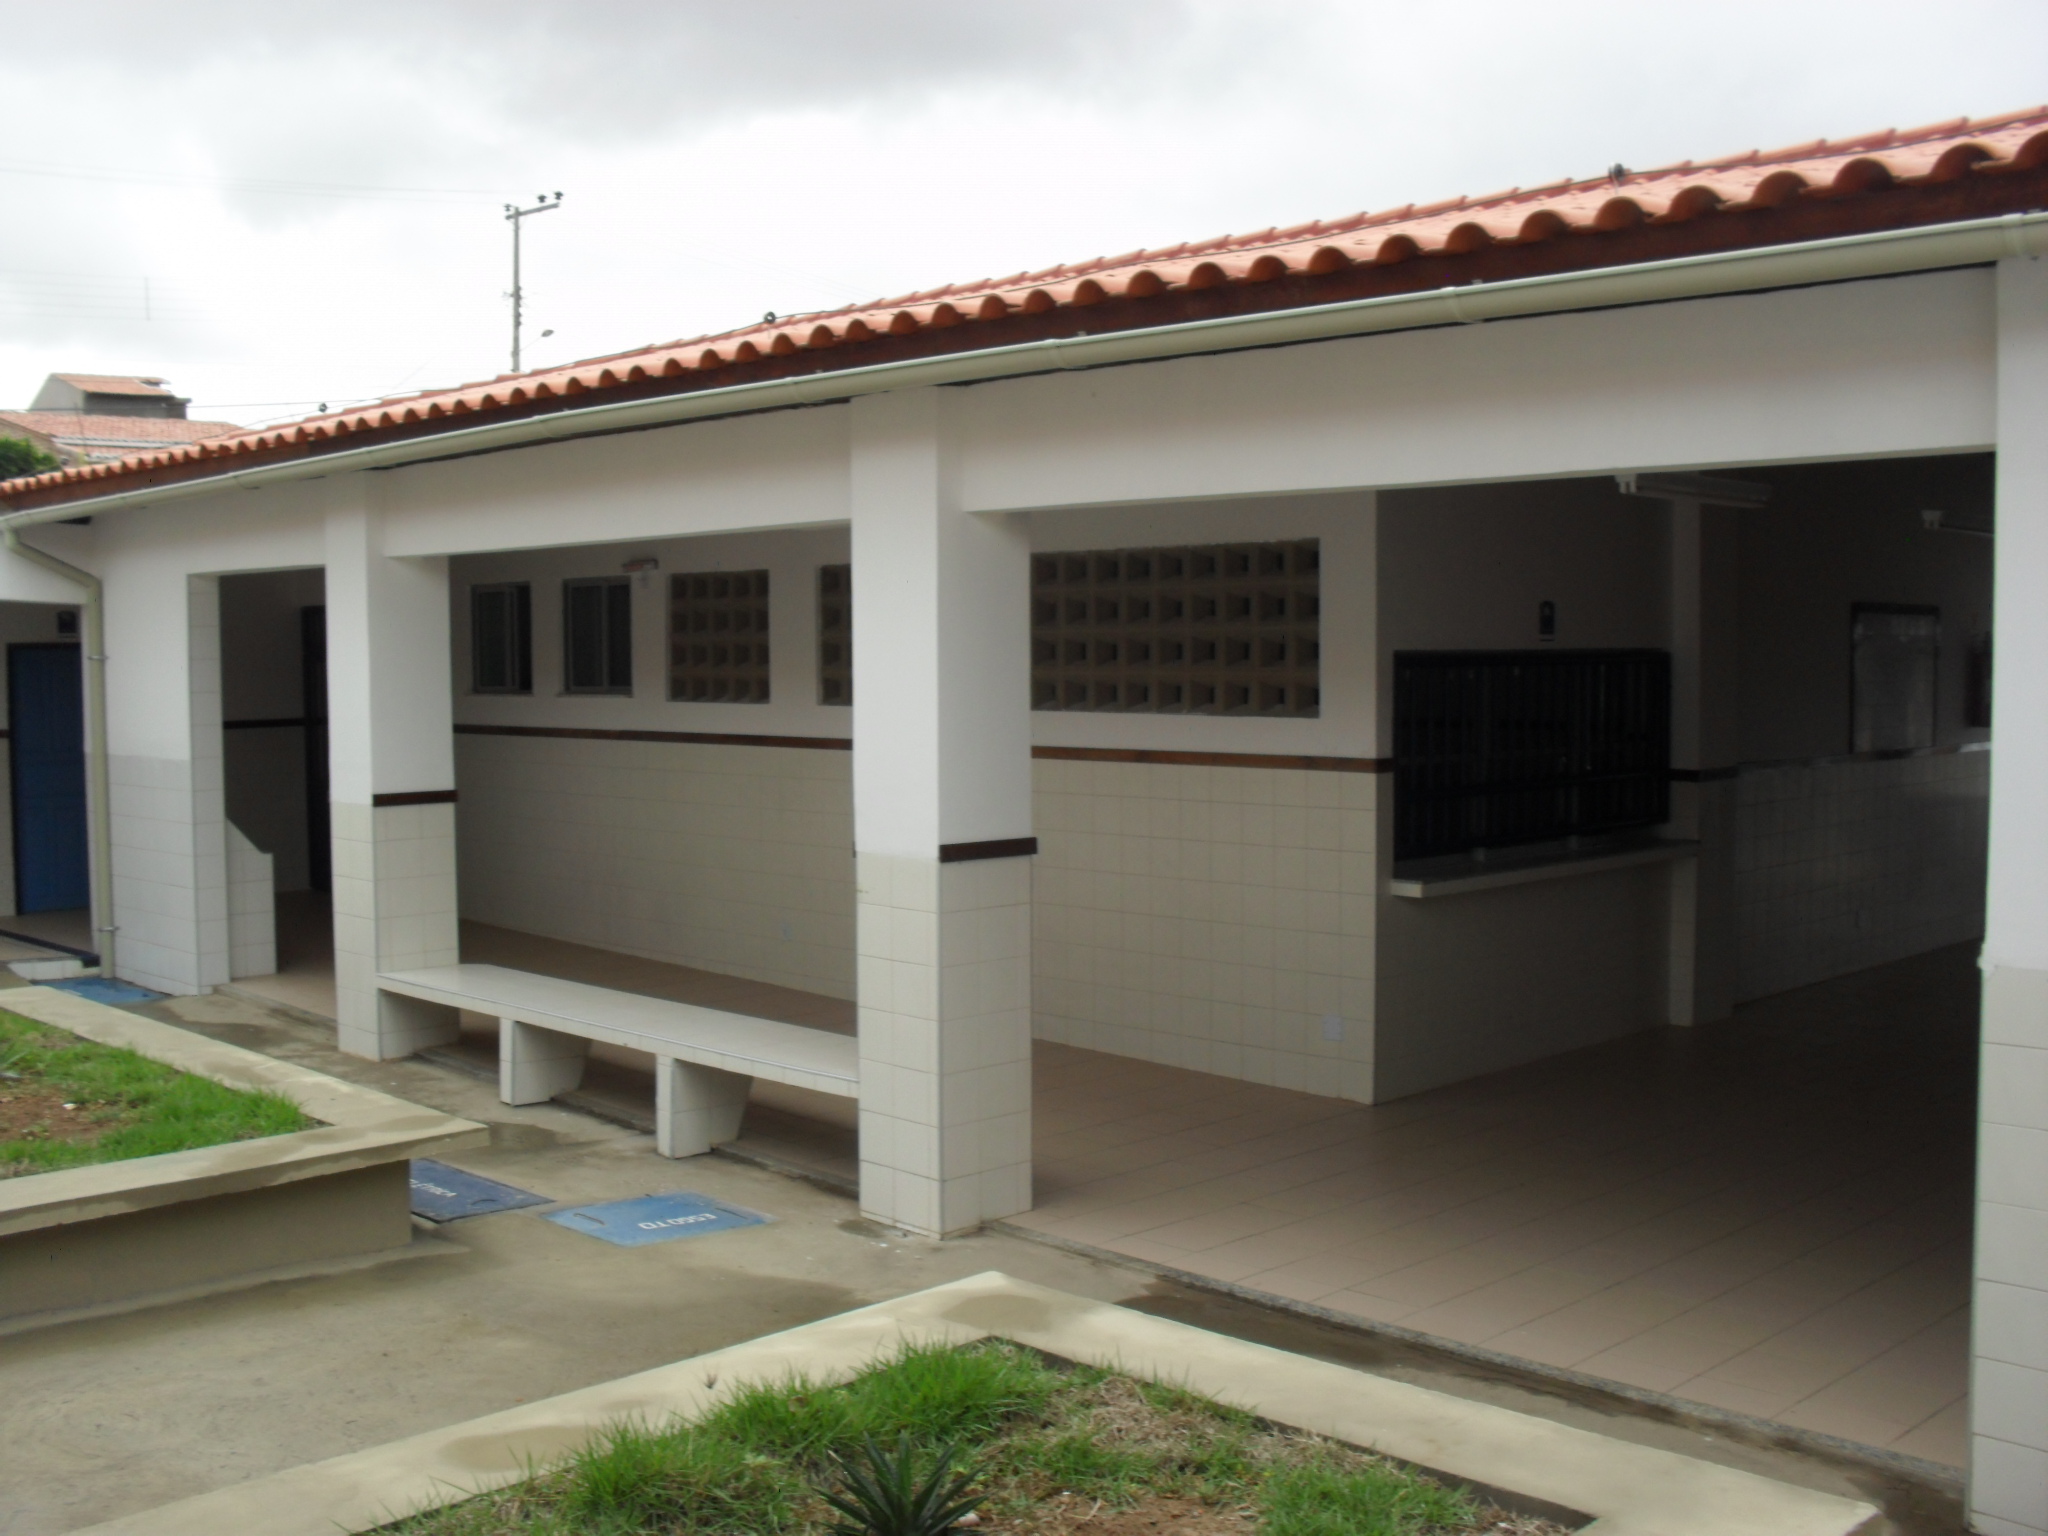 Construção de Unidade Escolar Colégio Berilo Vilas Boas com Quadra Poliesportiva – São José do Jacuípe/BA - Foto 4